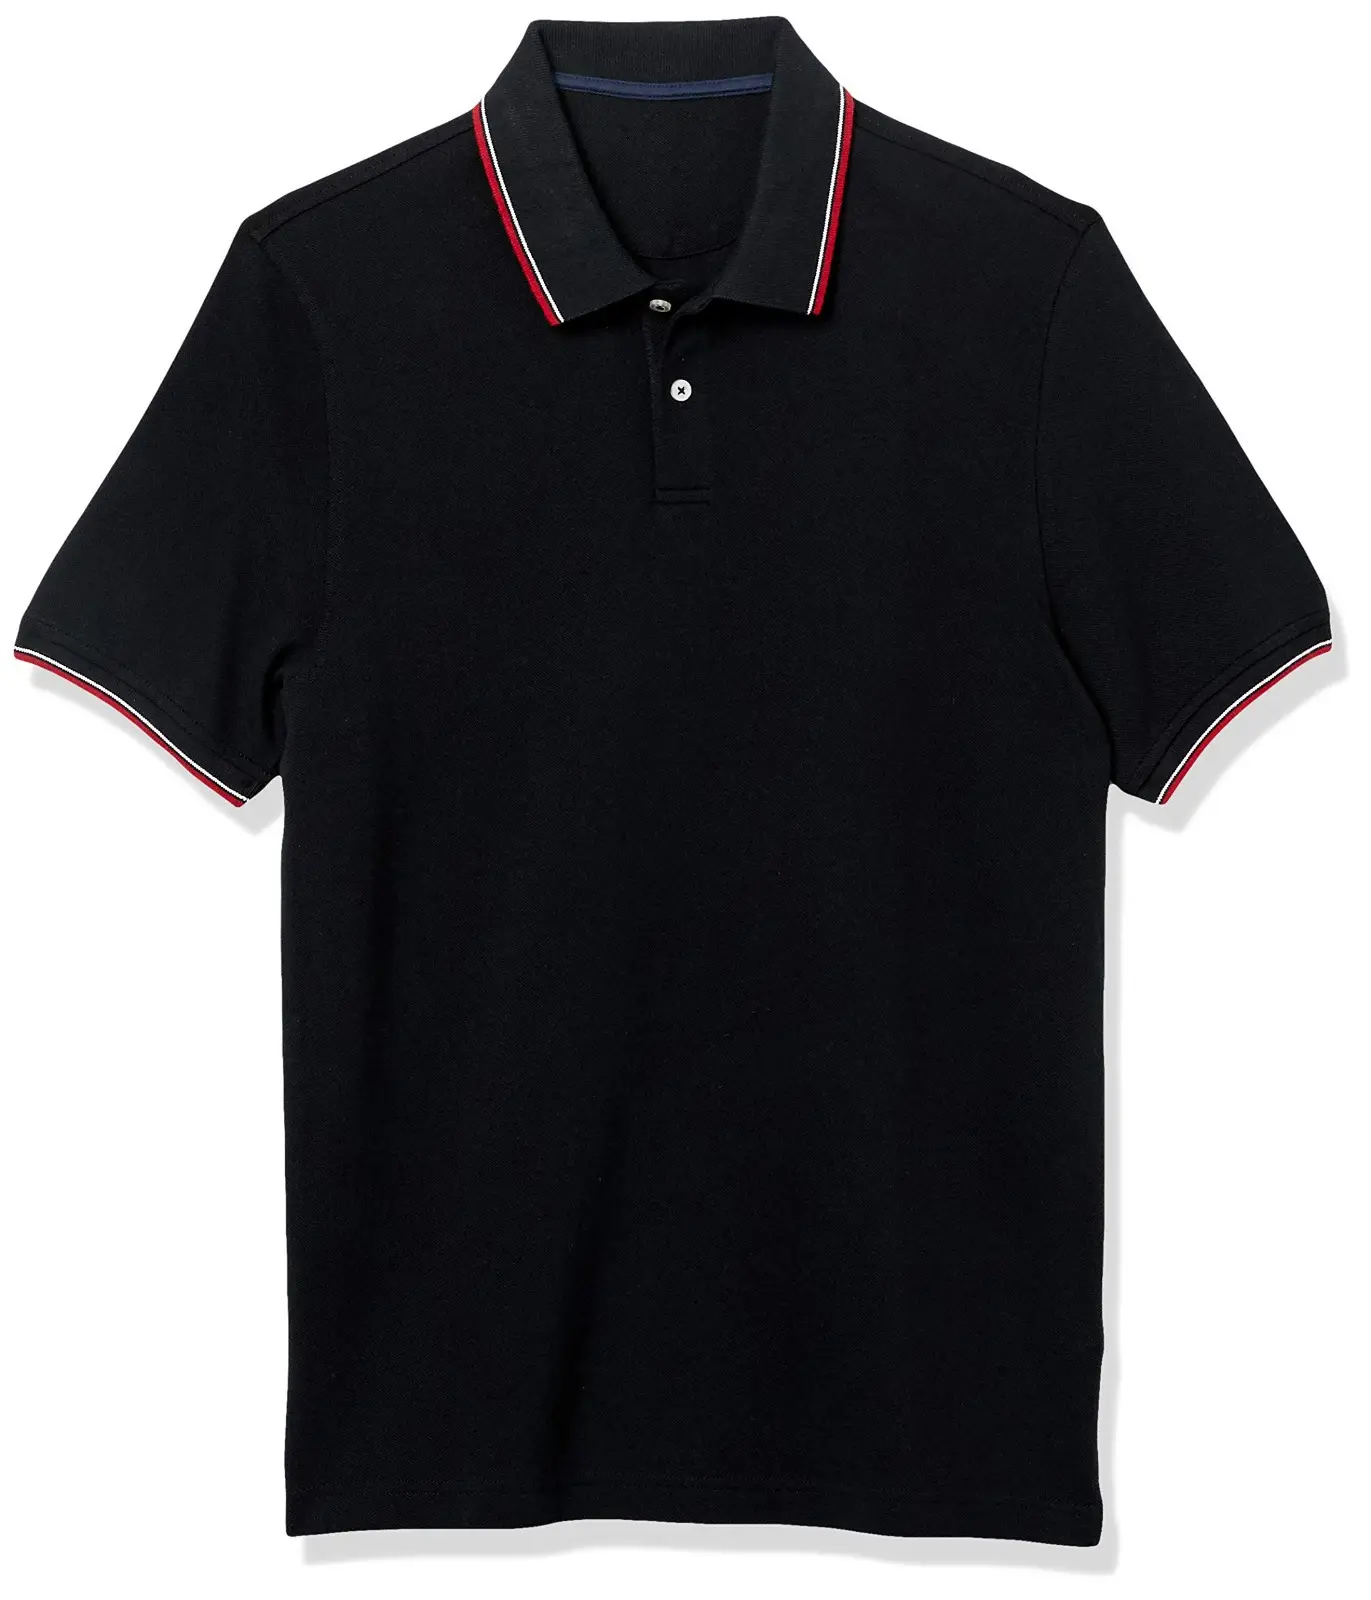 Neueste Hot Sale Custom Made OEM Service Hochwertige Baumwolle T-Shirts New Design Männer Golf Polo Shirts für Männer